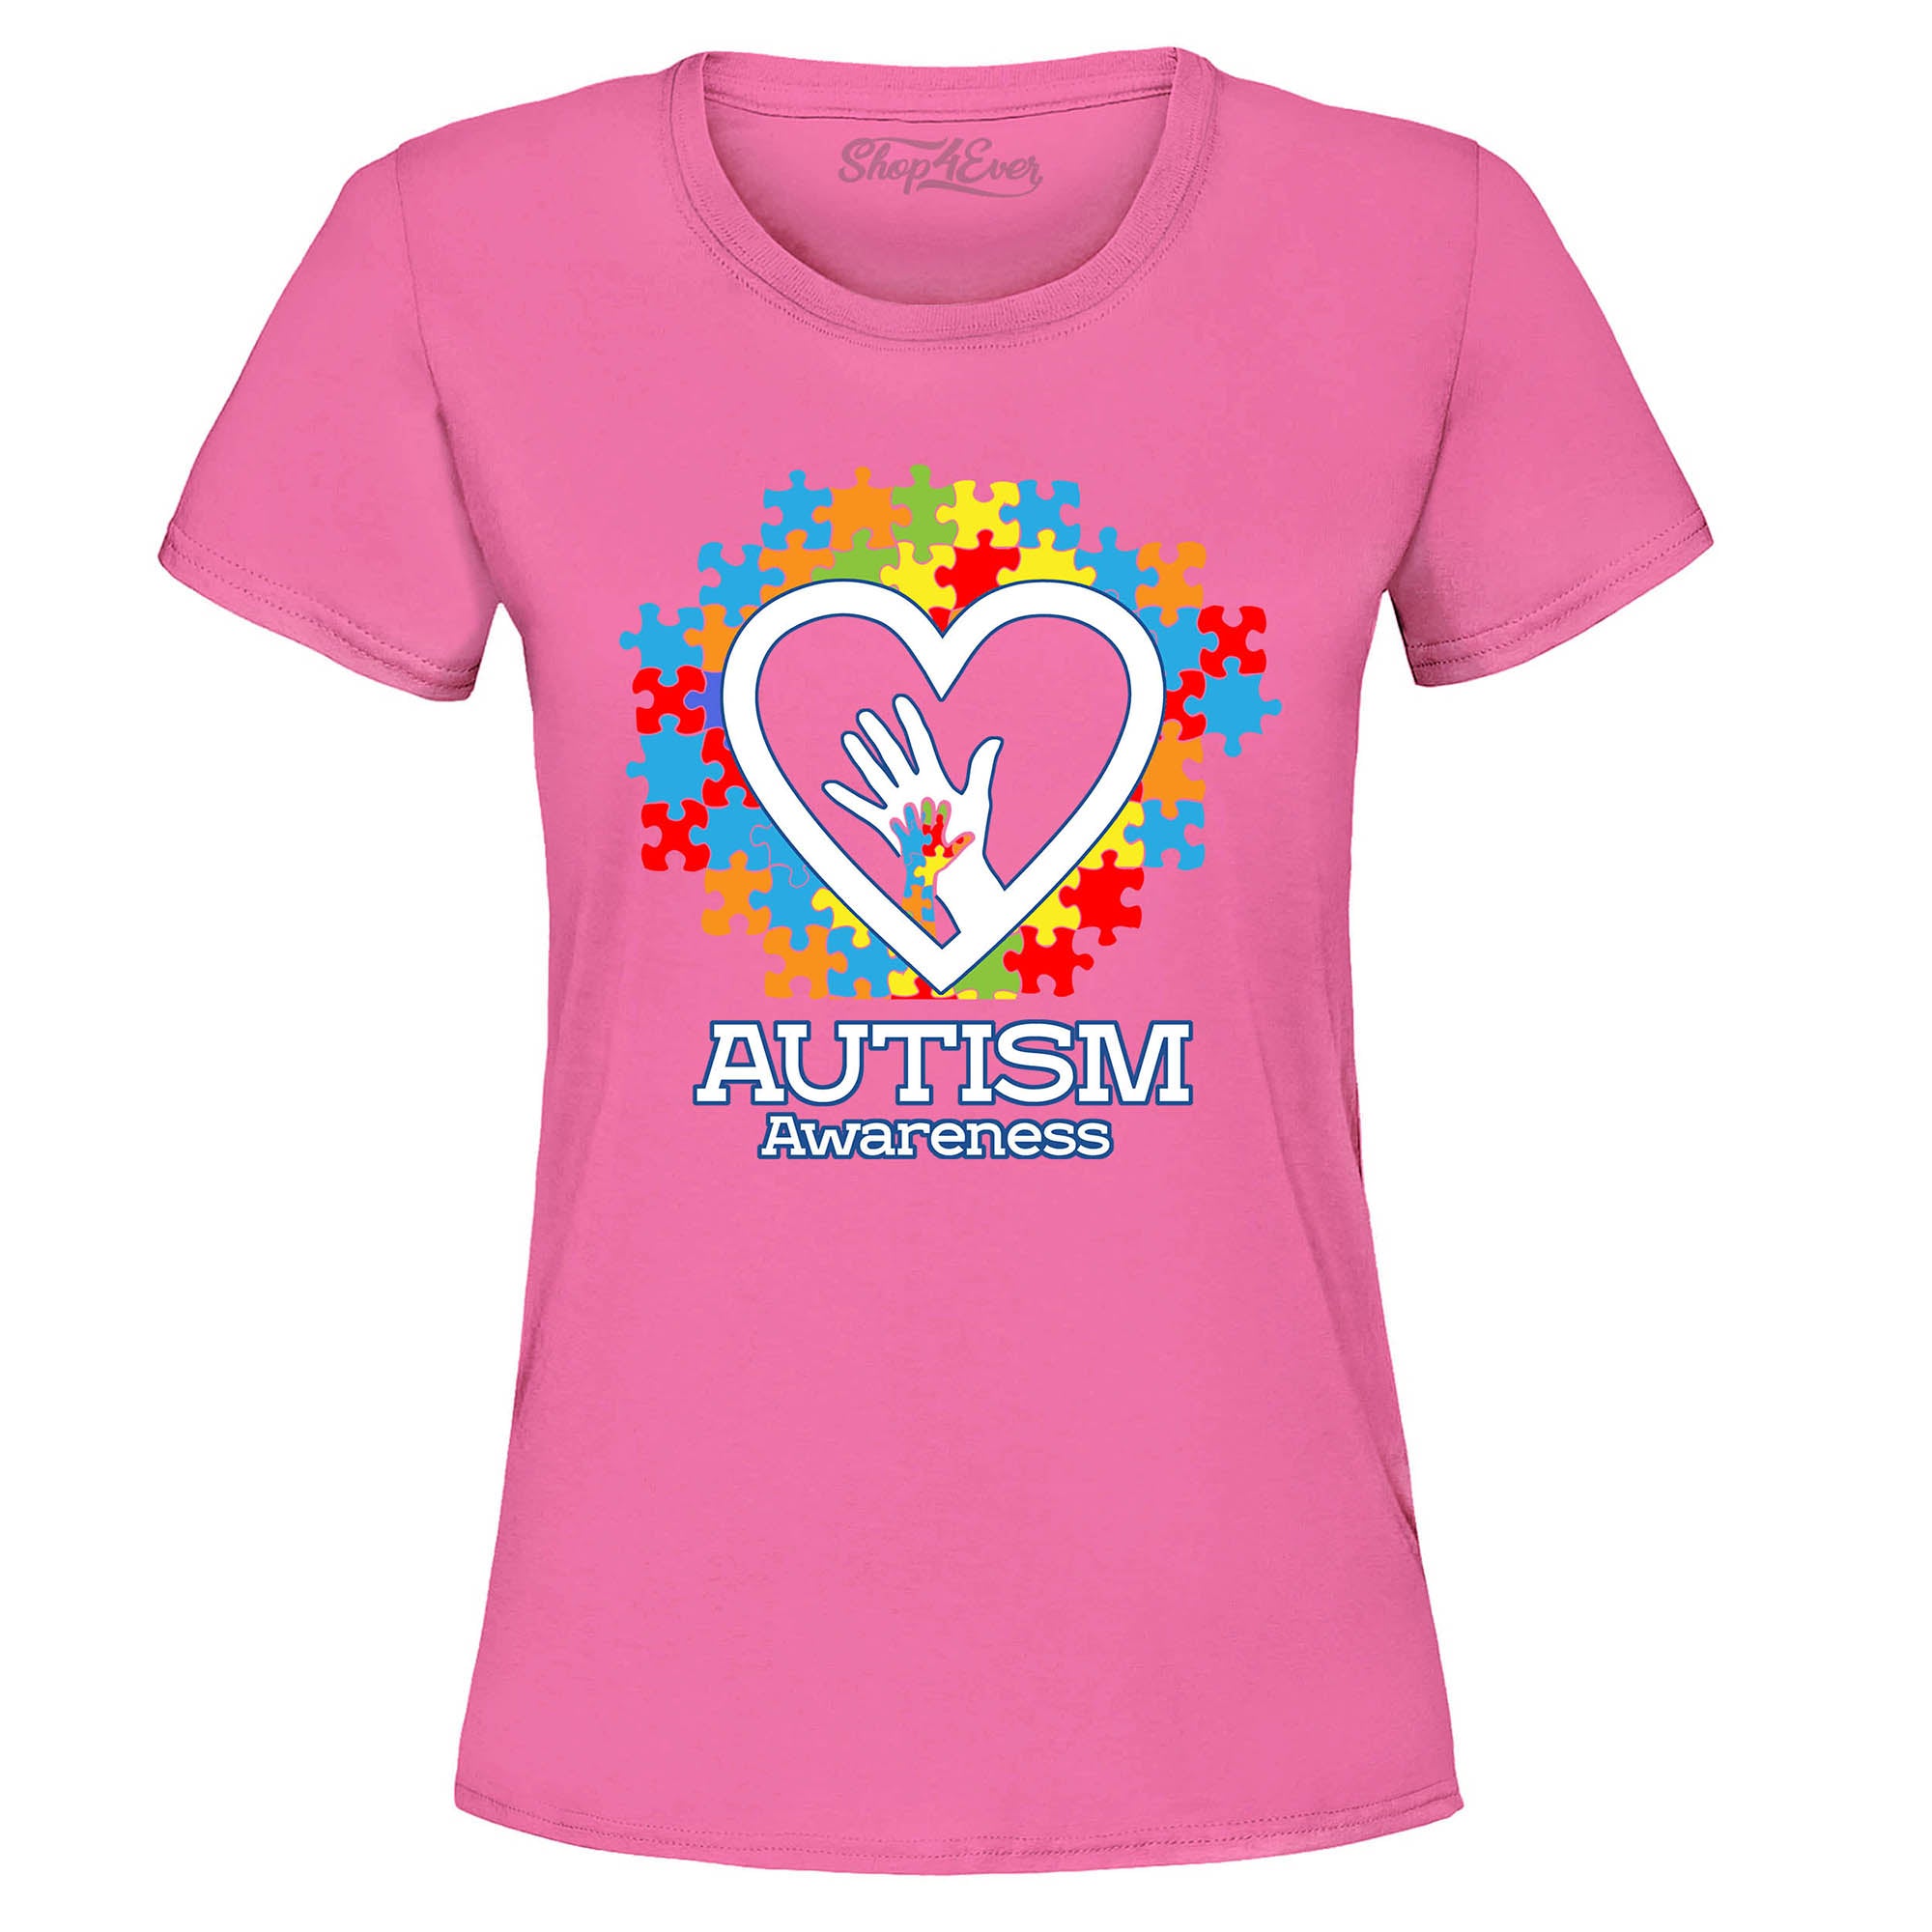 Autism Awareness Hands in Heart Women's T-Shirt